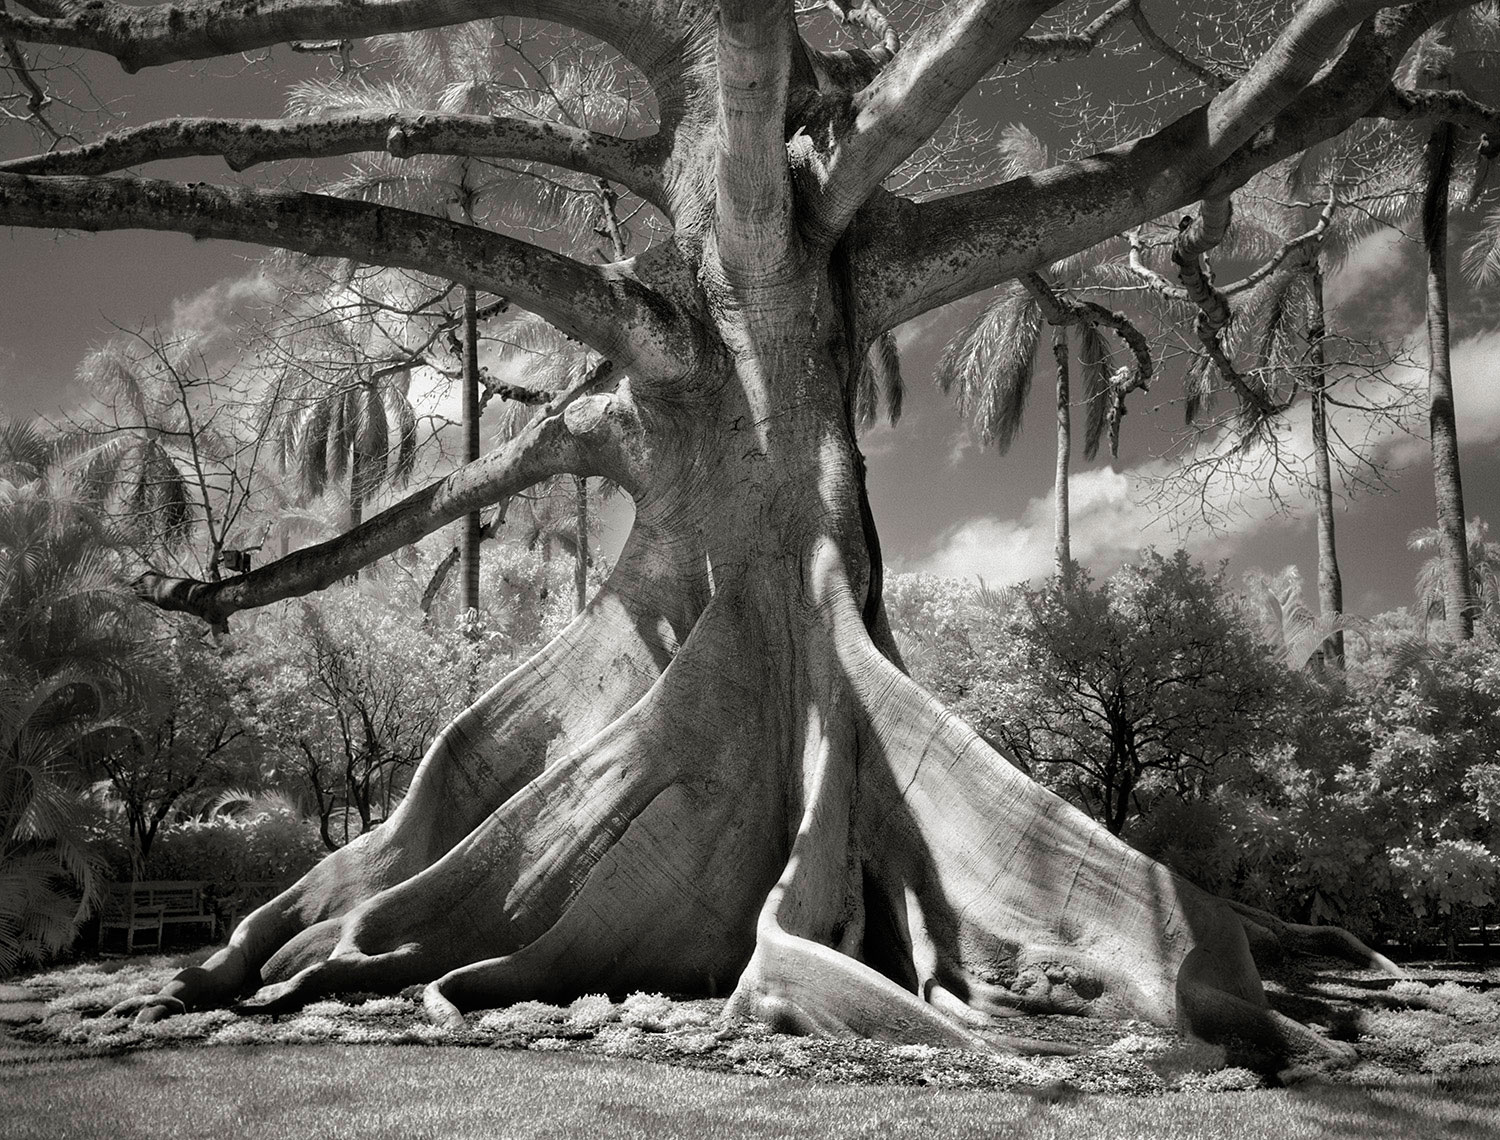 kapok tree, Ceiba pentandra, in Palm Beach, Florida